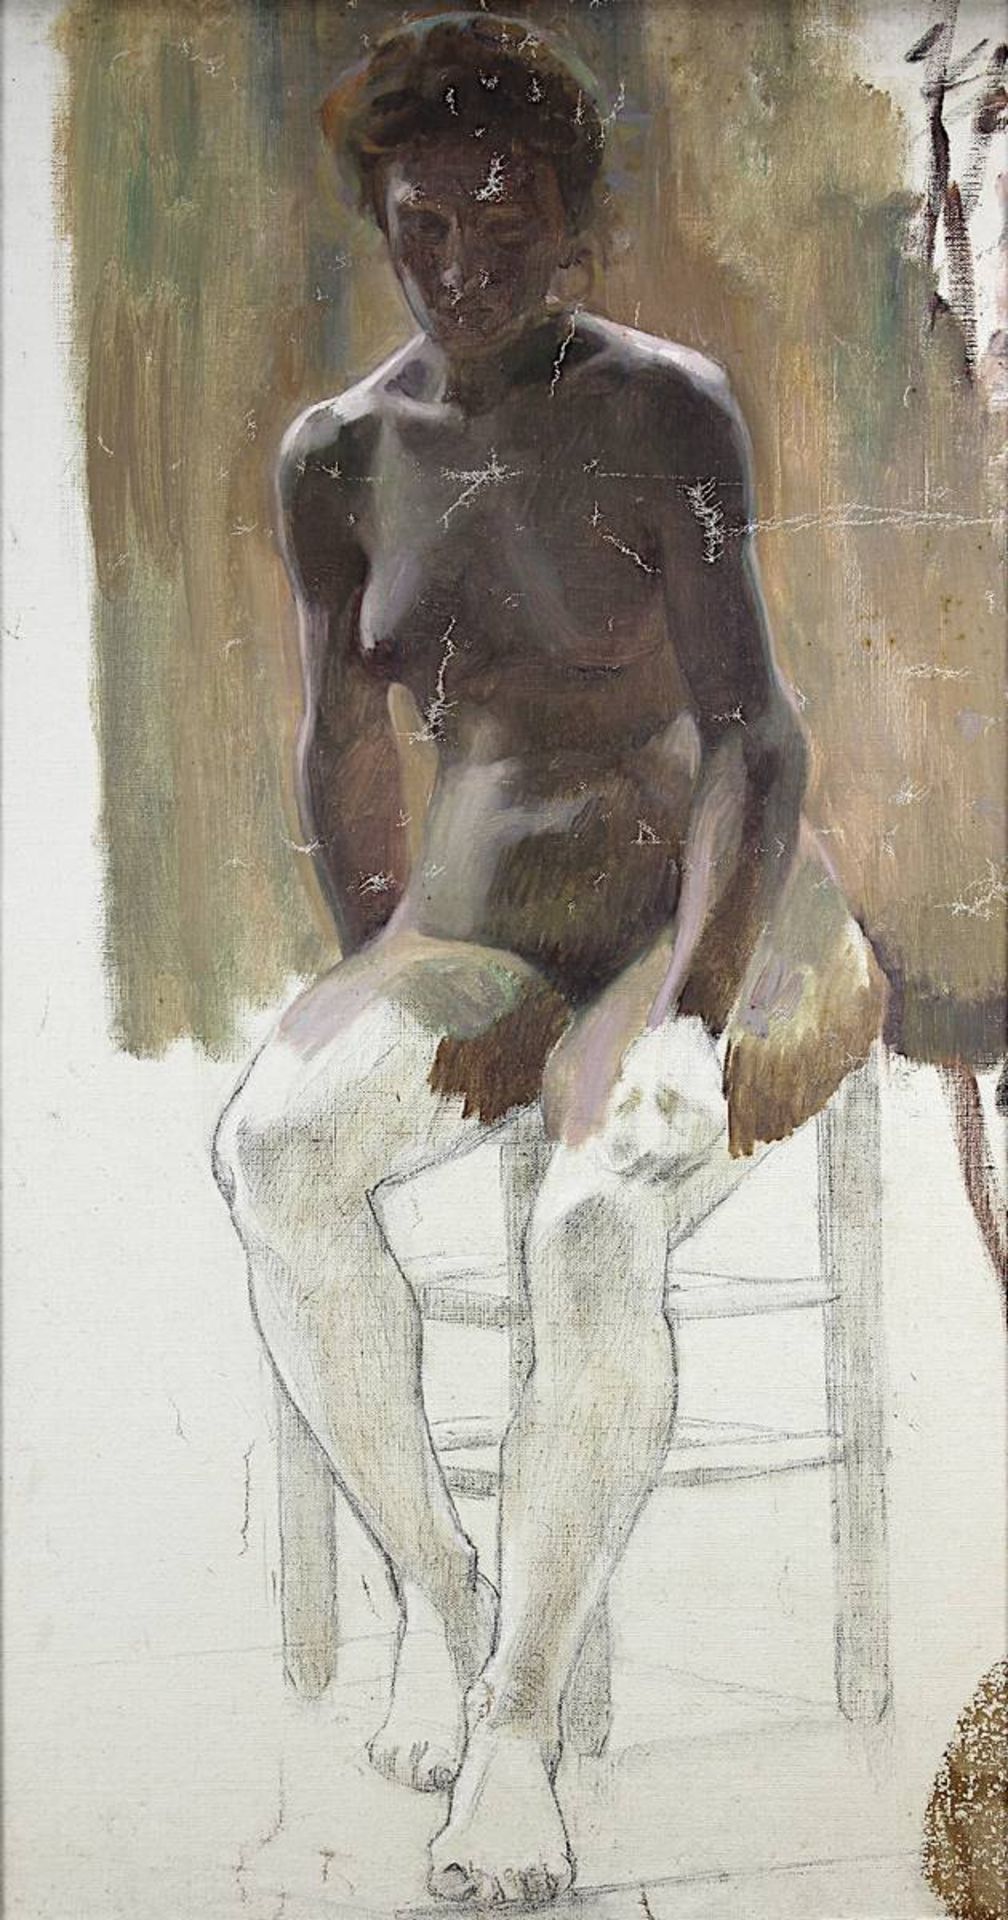 Aktmaler 2. H. 19. Jh., auf Stuhl sitzender weiblicher Akt, Aktstudie um 1890, Öl auf Leinwand, - Bild 2 aus 2